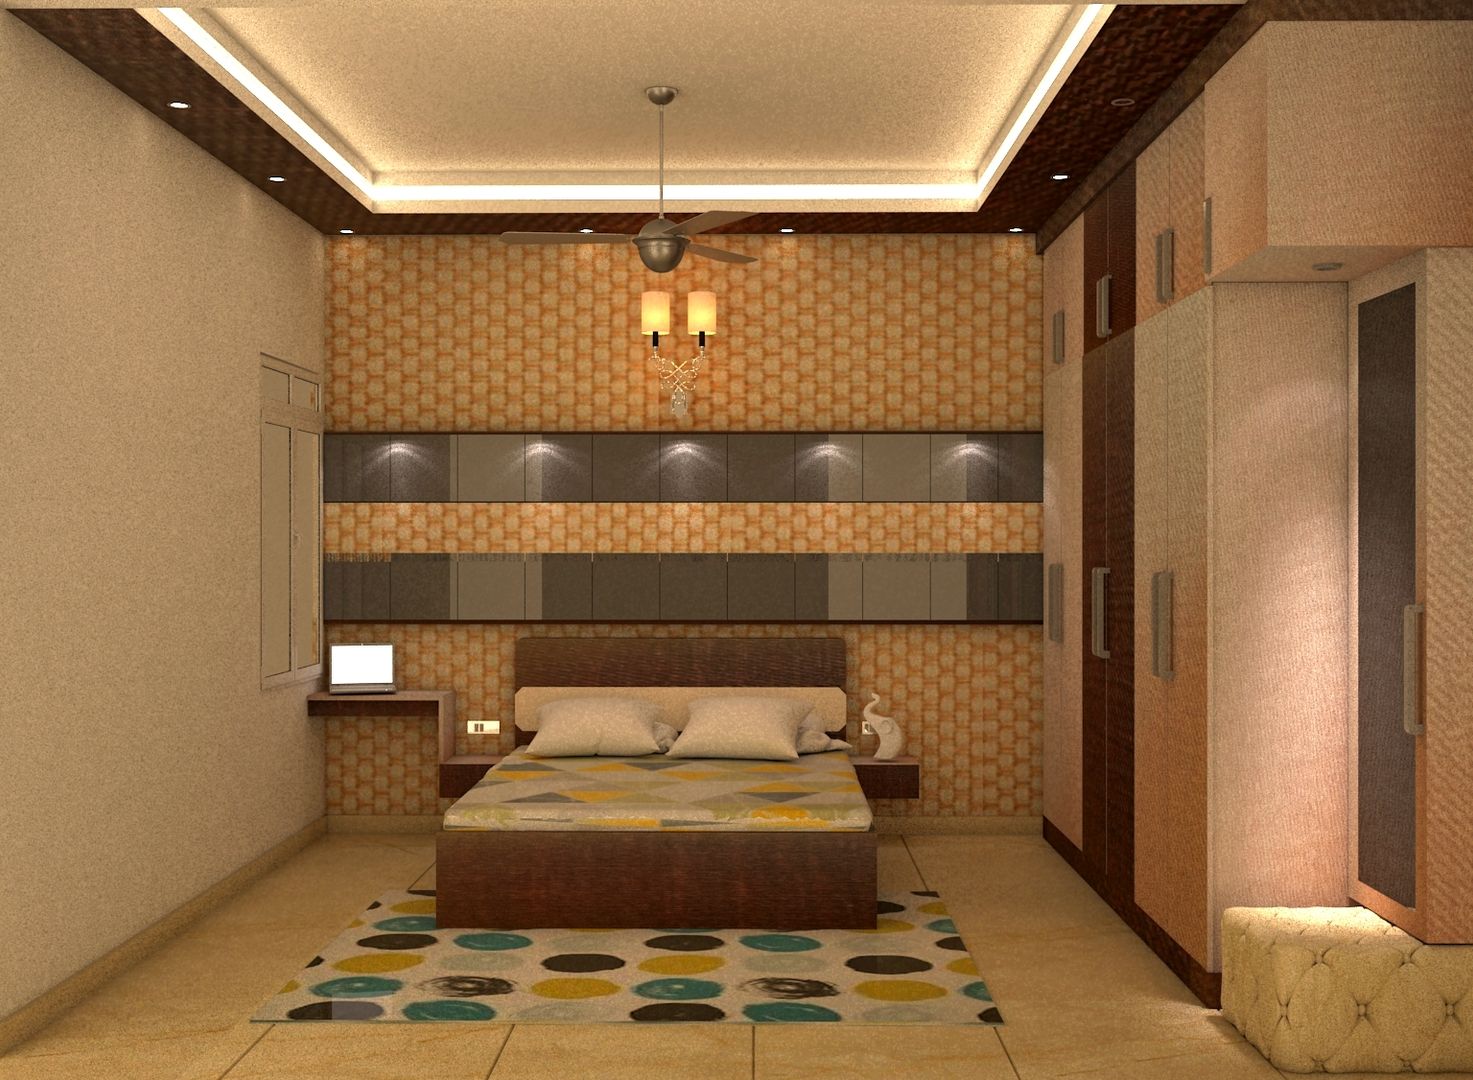 Mantri Webcity, Duplex 3 BHK - Mr. Vishal, DECOR DREAMS DECOR DREAMS Dormitorios modernos: Ideas, imágenes y decoración